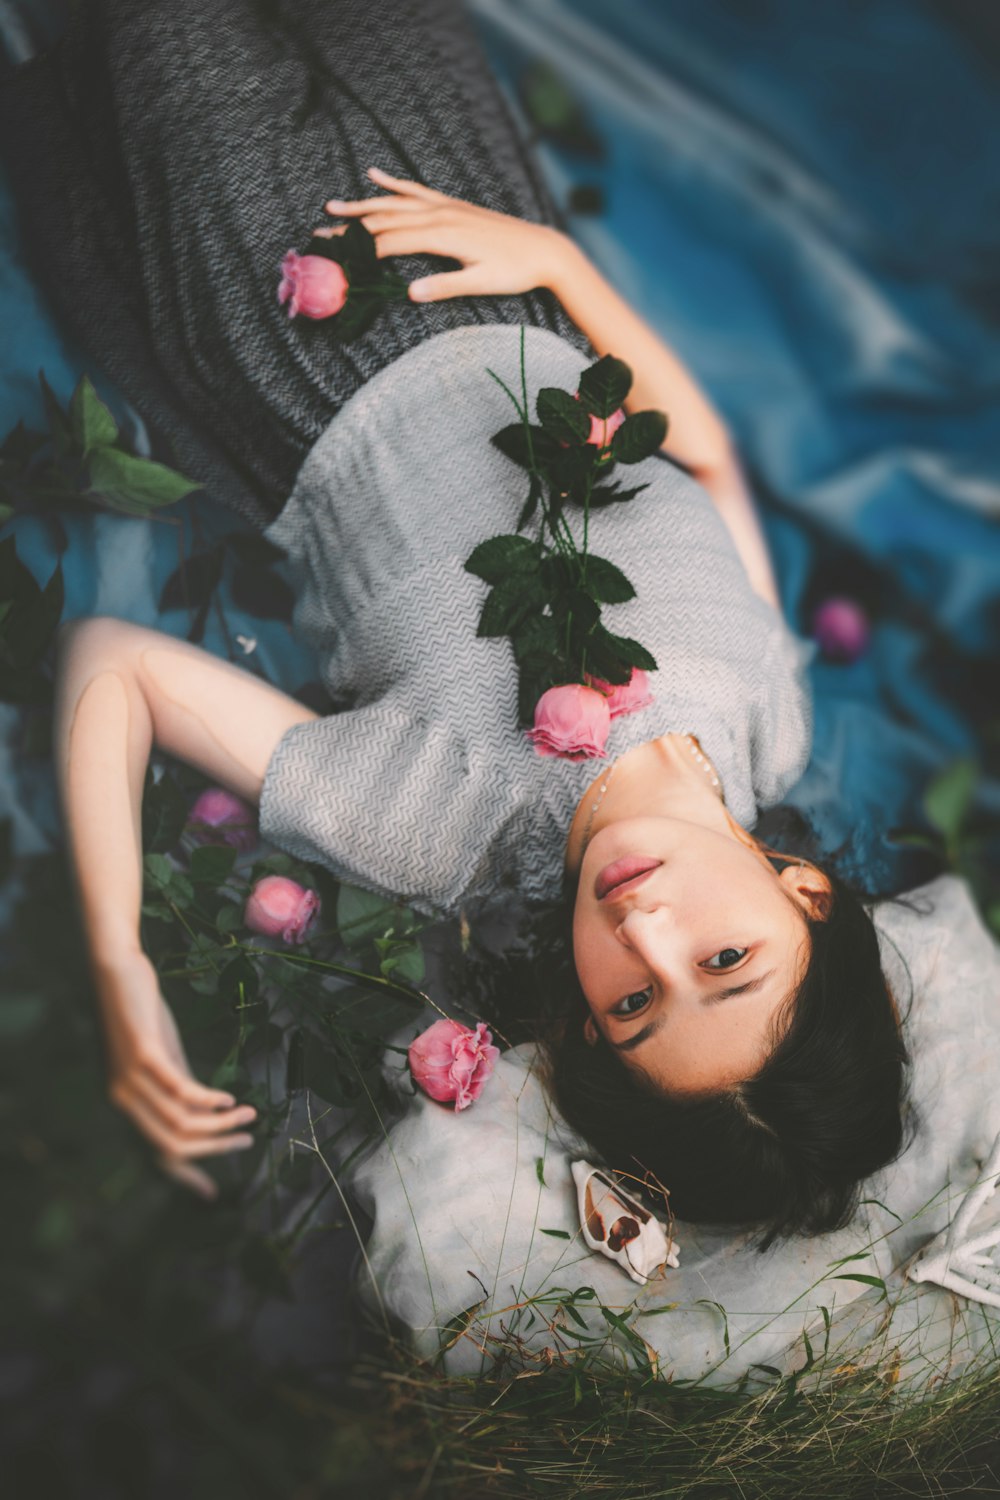 Une femme allongée sur le sol entourée de fleurs